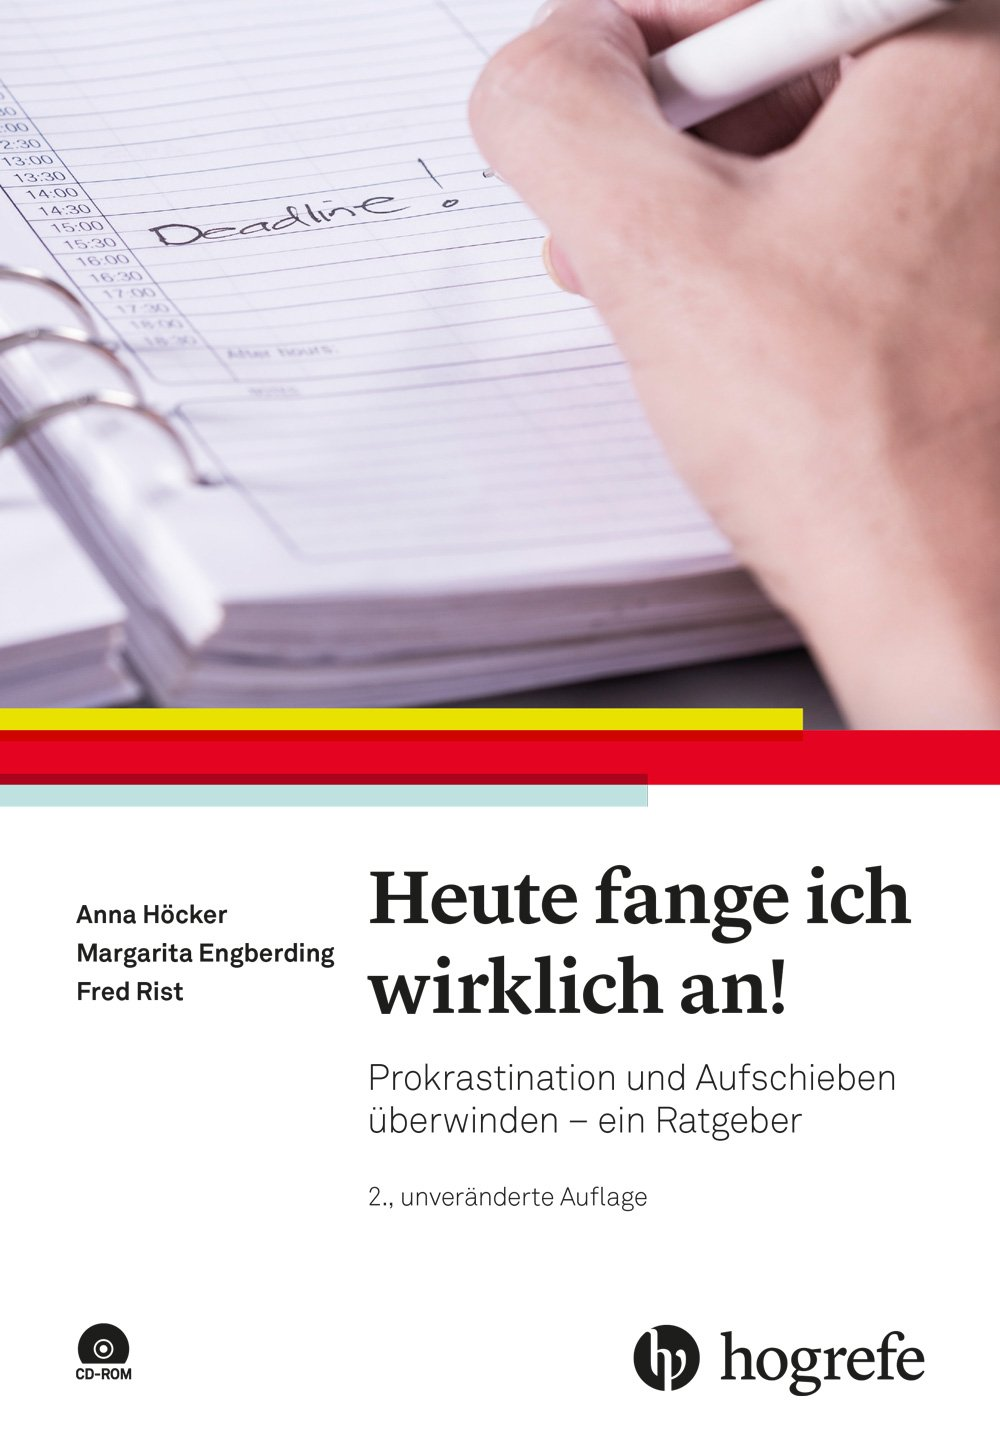 Anna Höcker Ratgeber Prokrastination Buchcover